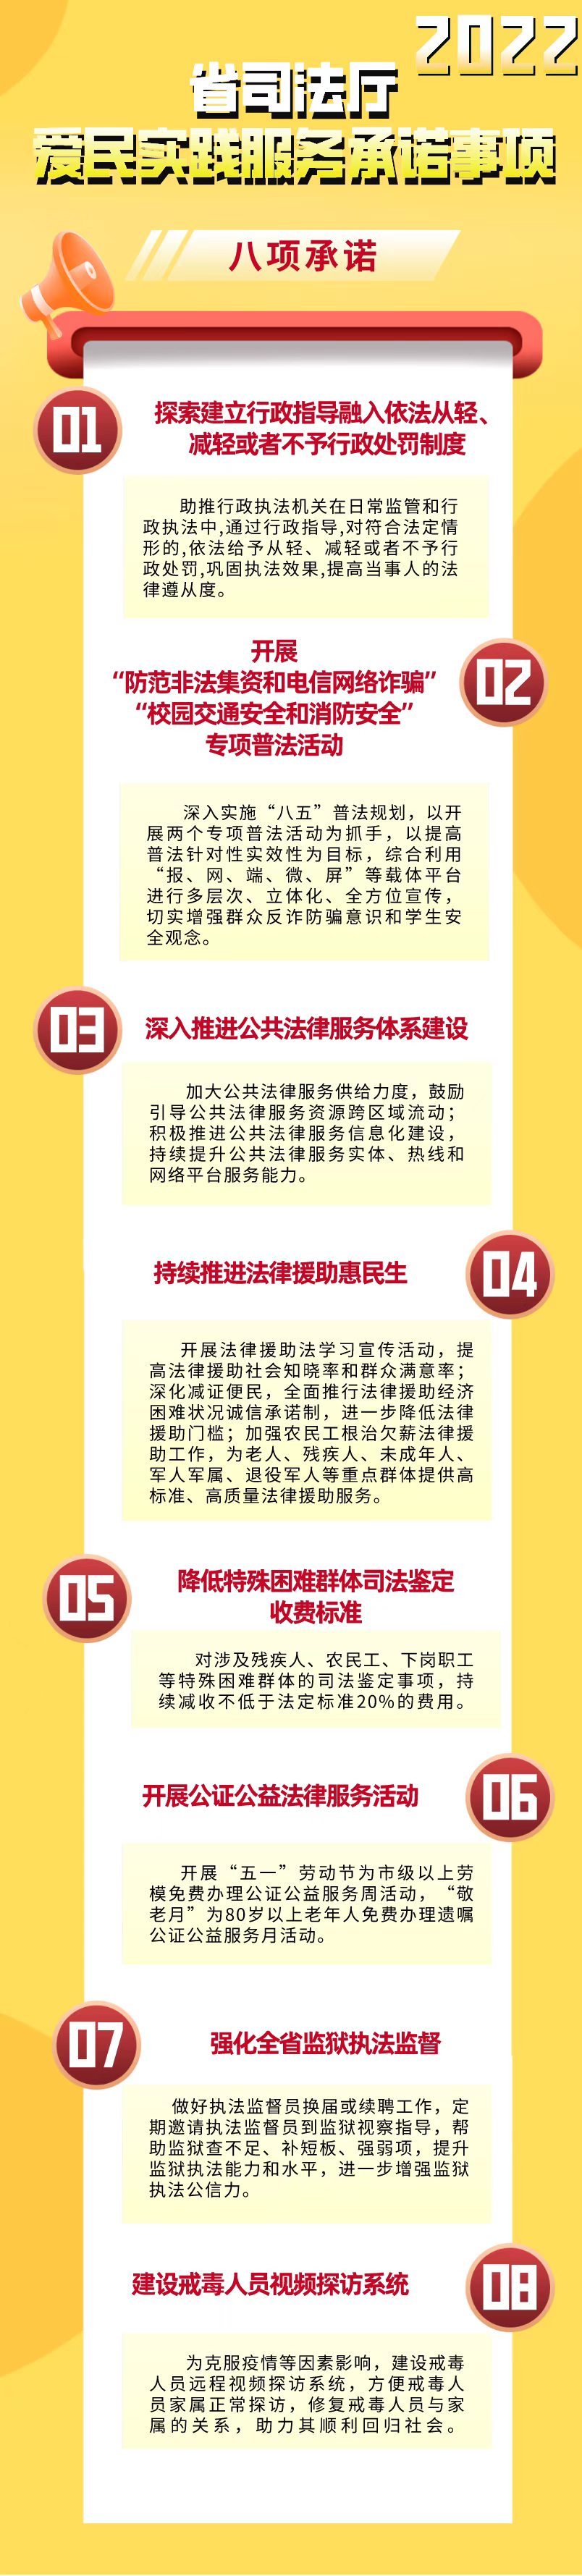 [动态]北京：本年改造15个商圈 新添10余家商场 四大世界消费体会区建造全面发动